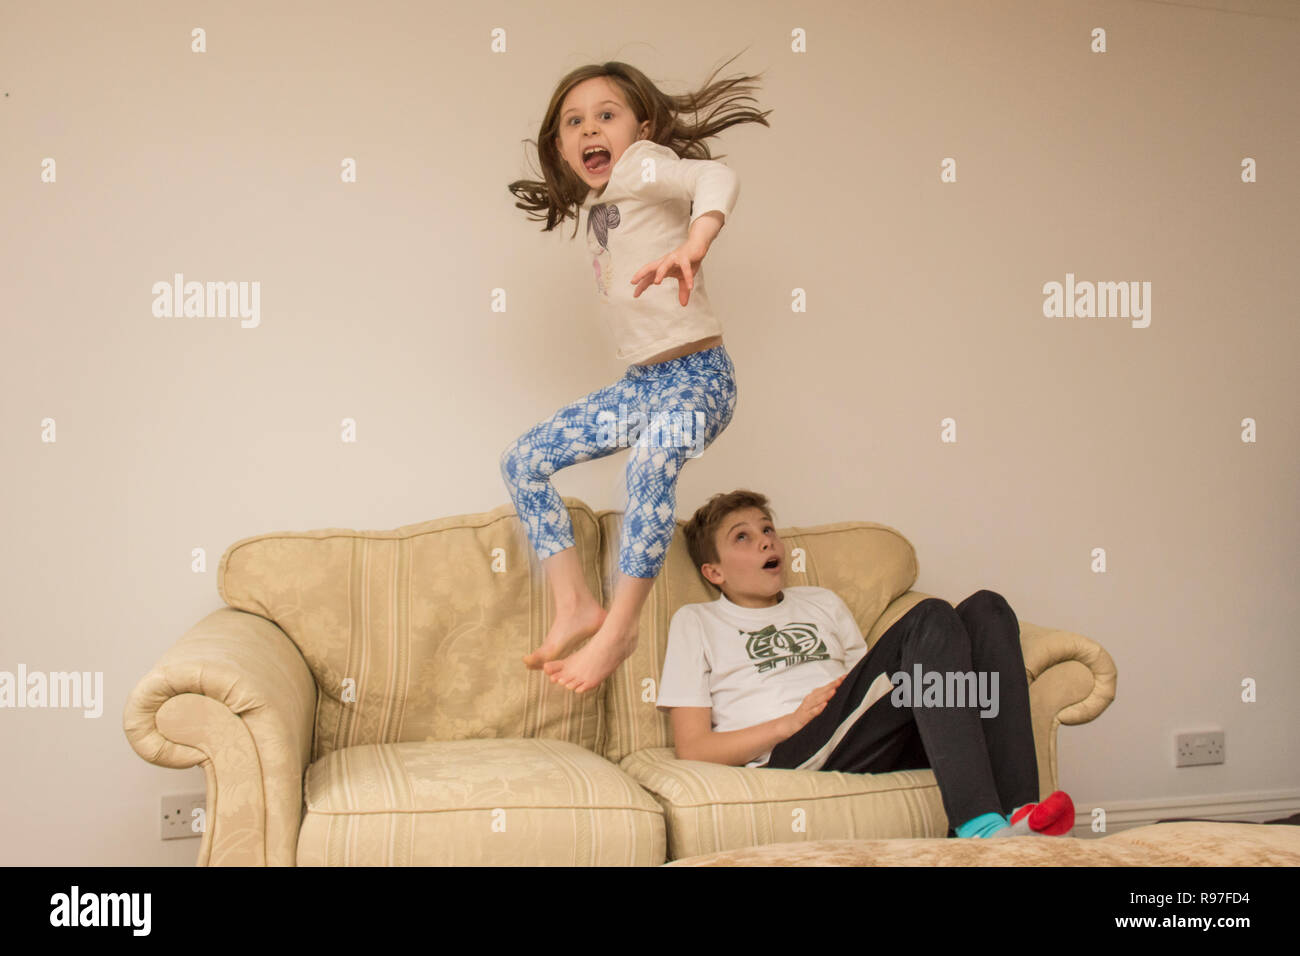 Les enfants, frère et soeur à propos de saut sur des meubles, de la plongée et de sauter, d'être hyperactifs, beaucoup d'énergie, de jouer ensemble Banque D'Images